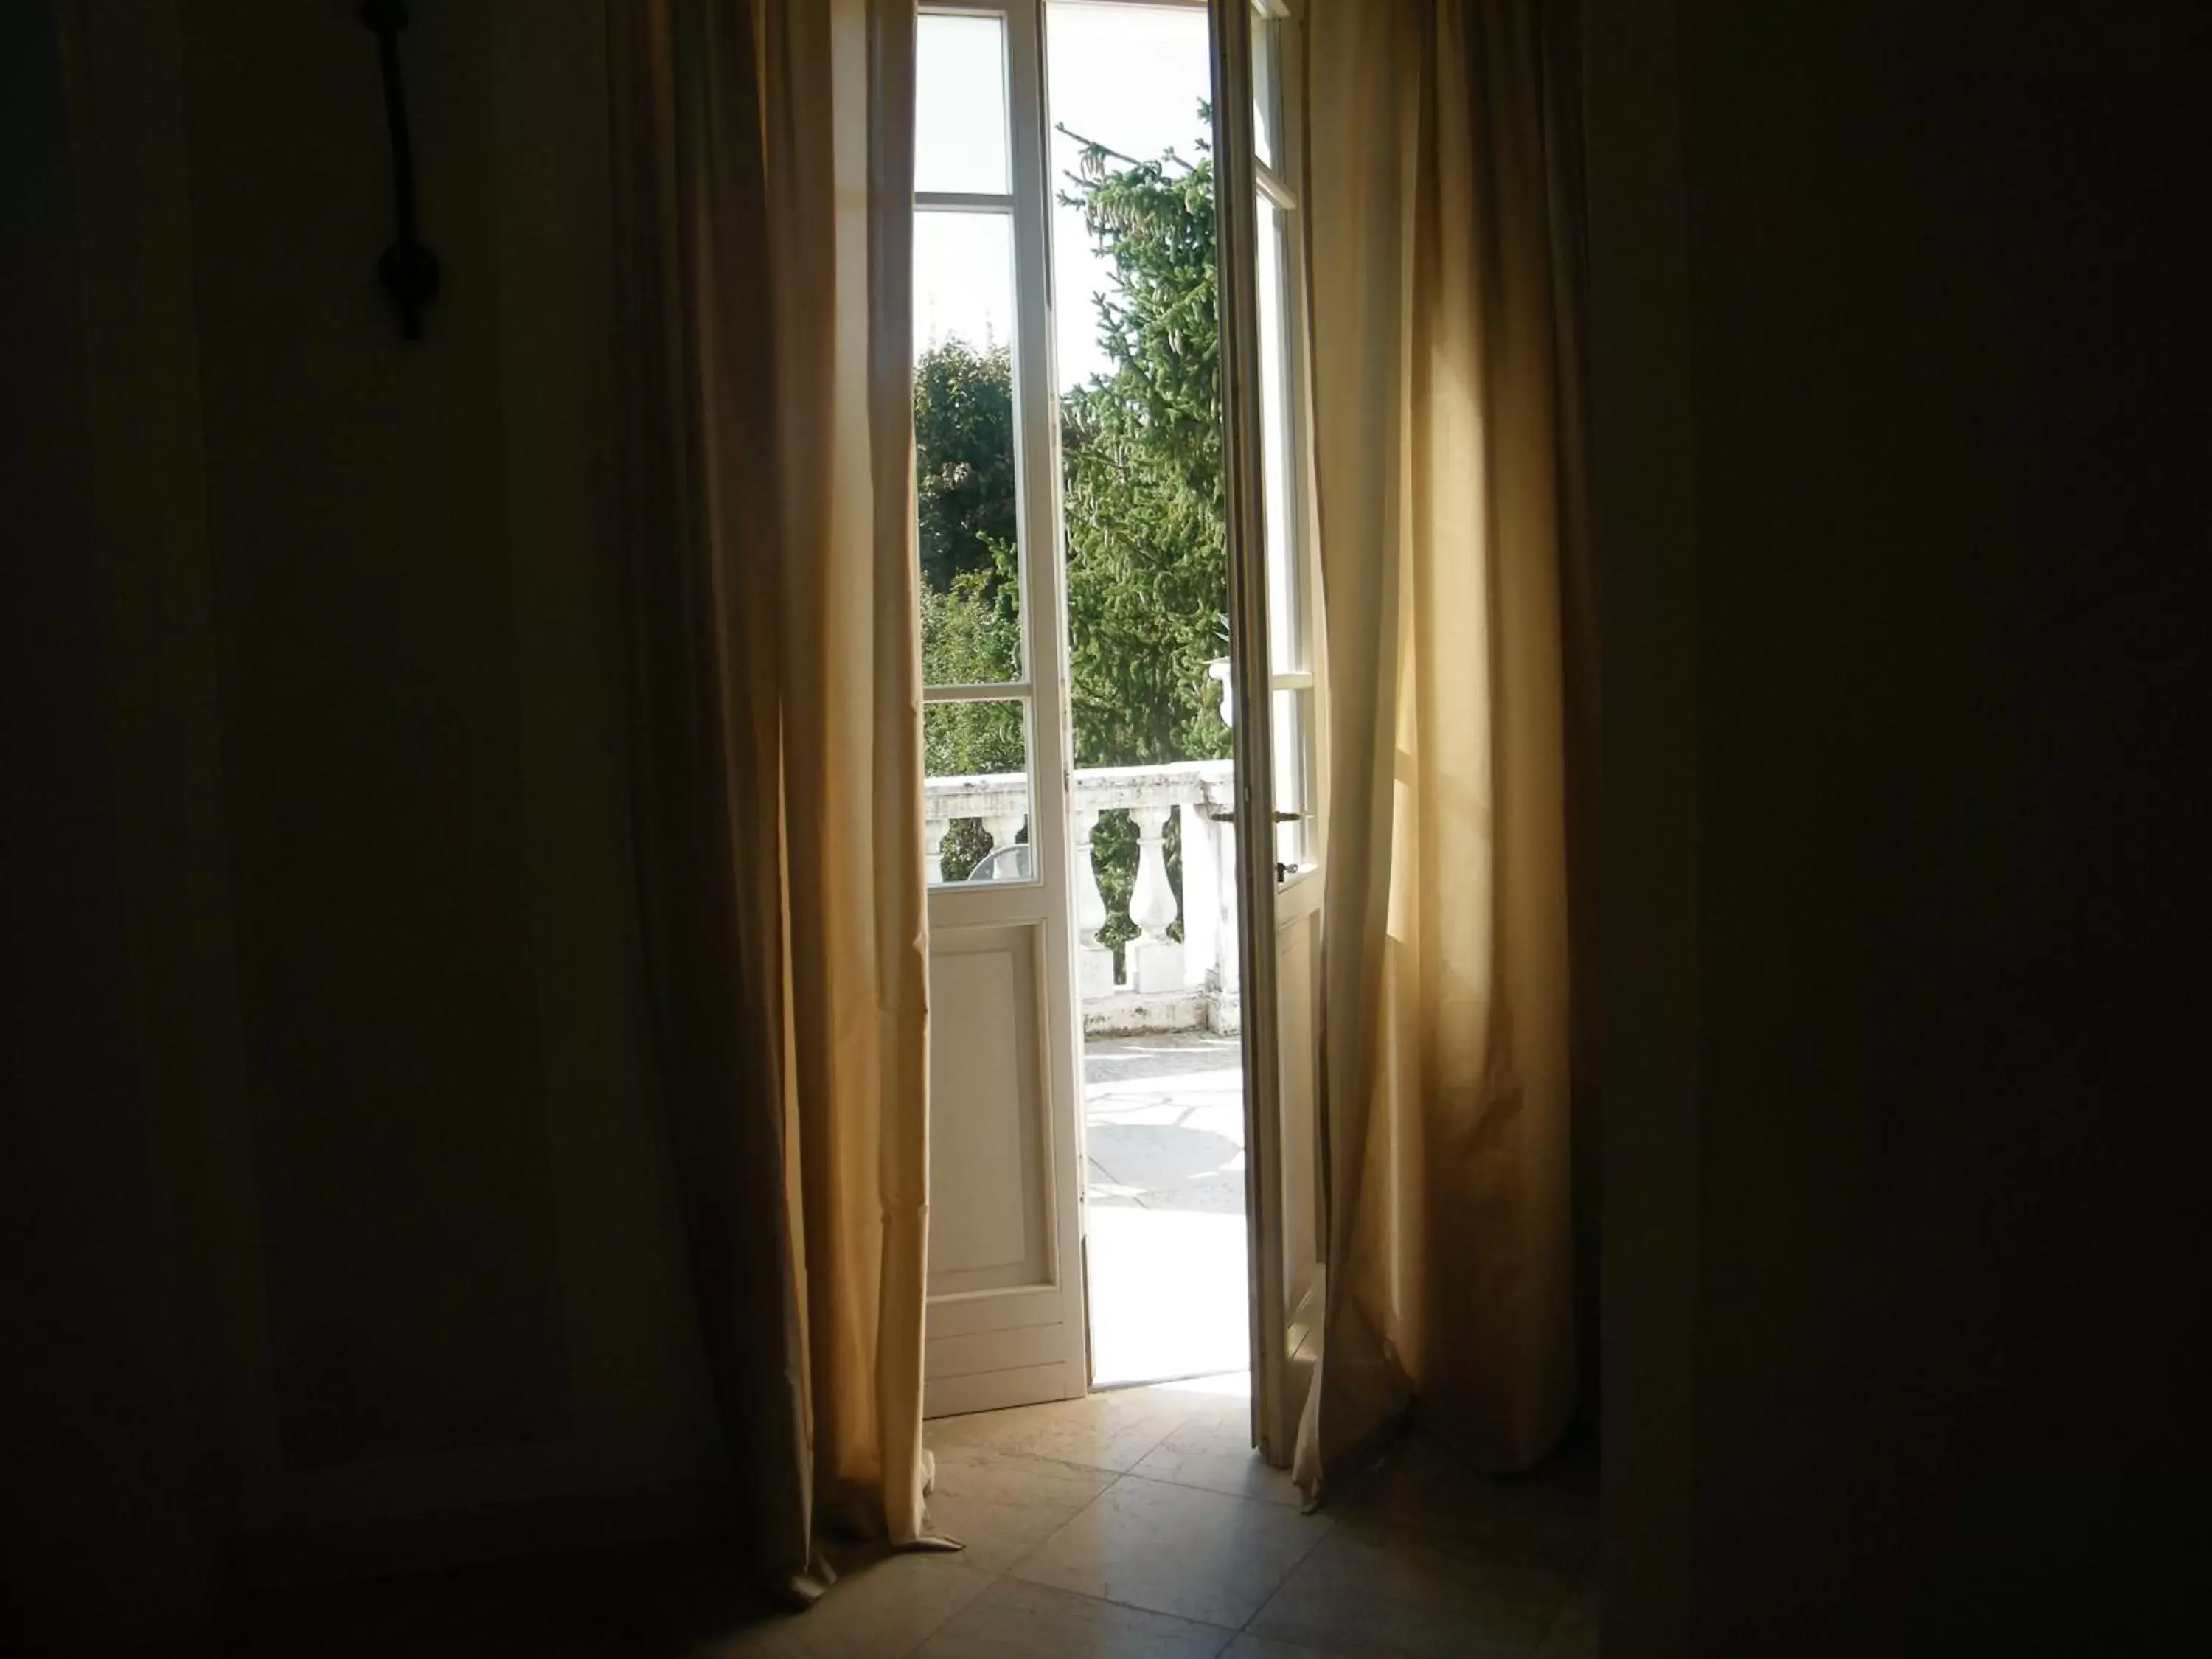 View in Villa Franca in Franciacorta